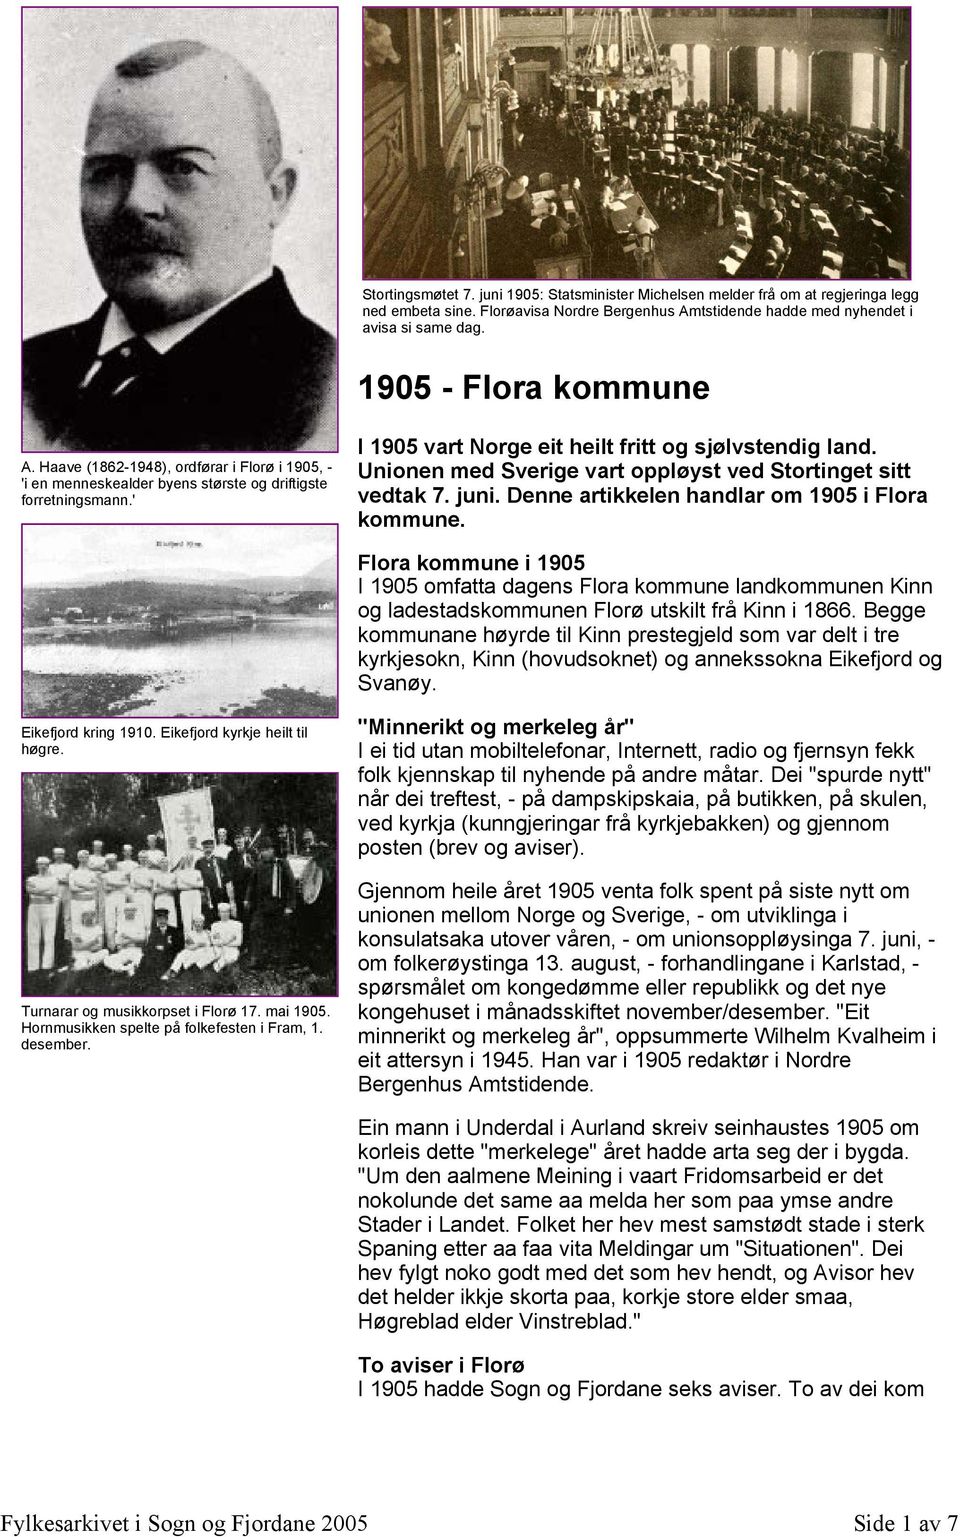 Unionen med Sverige vart oppløyst ved Stortinget sitt vedtak 7. juni. Denne artikkelen handlar om 1905 i Flora kommune.